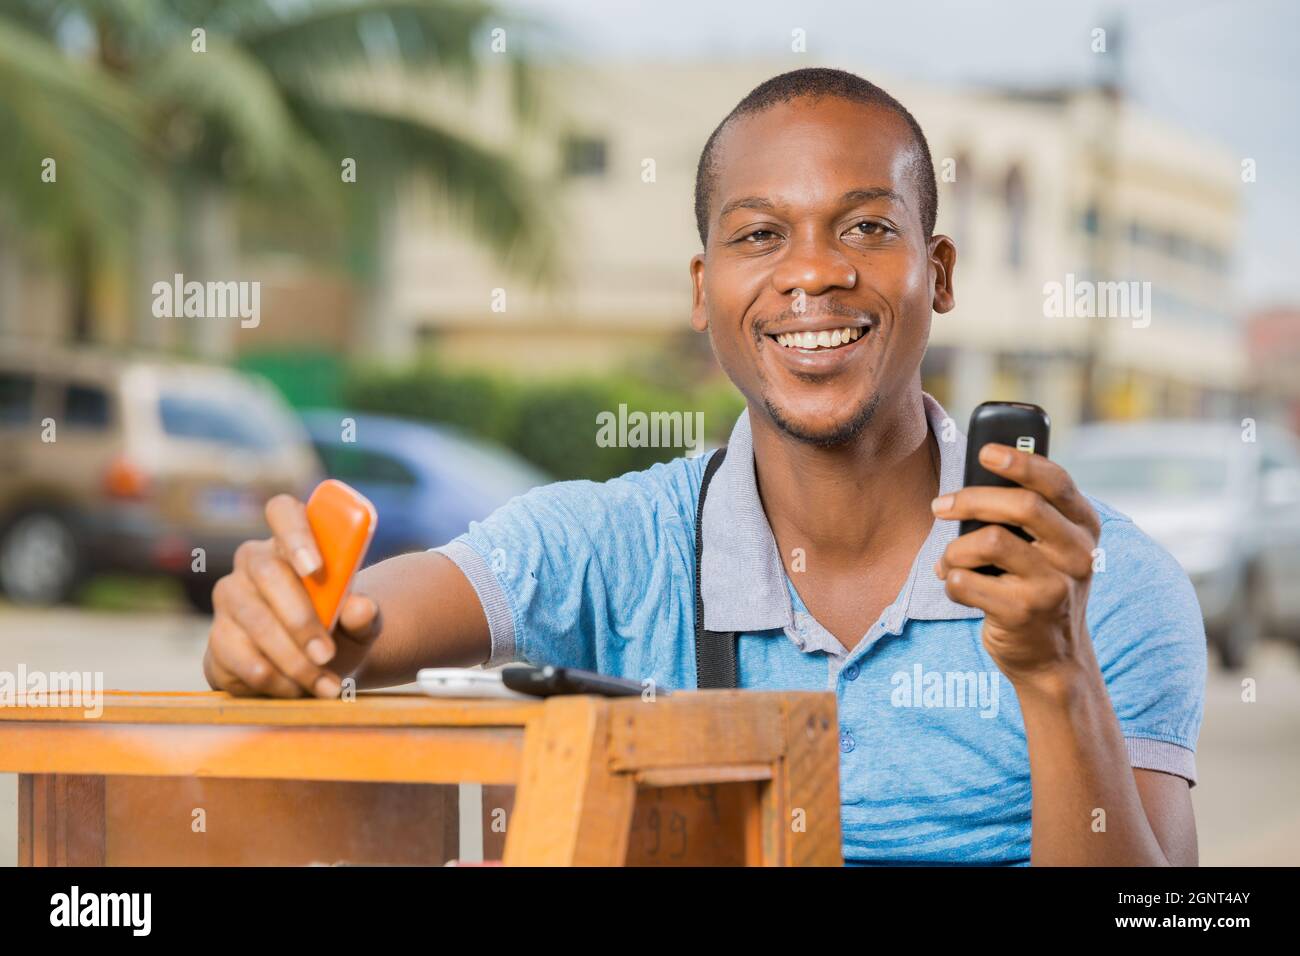 homme souriant assis à une cabine téléphonique Foto Stock